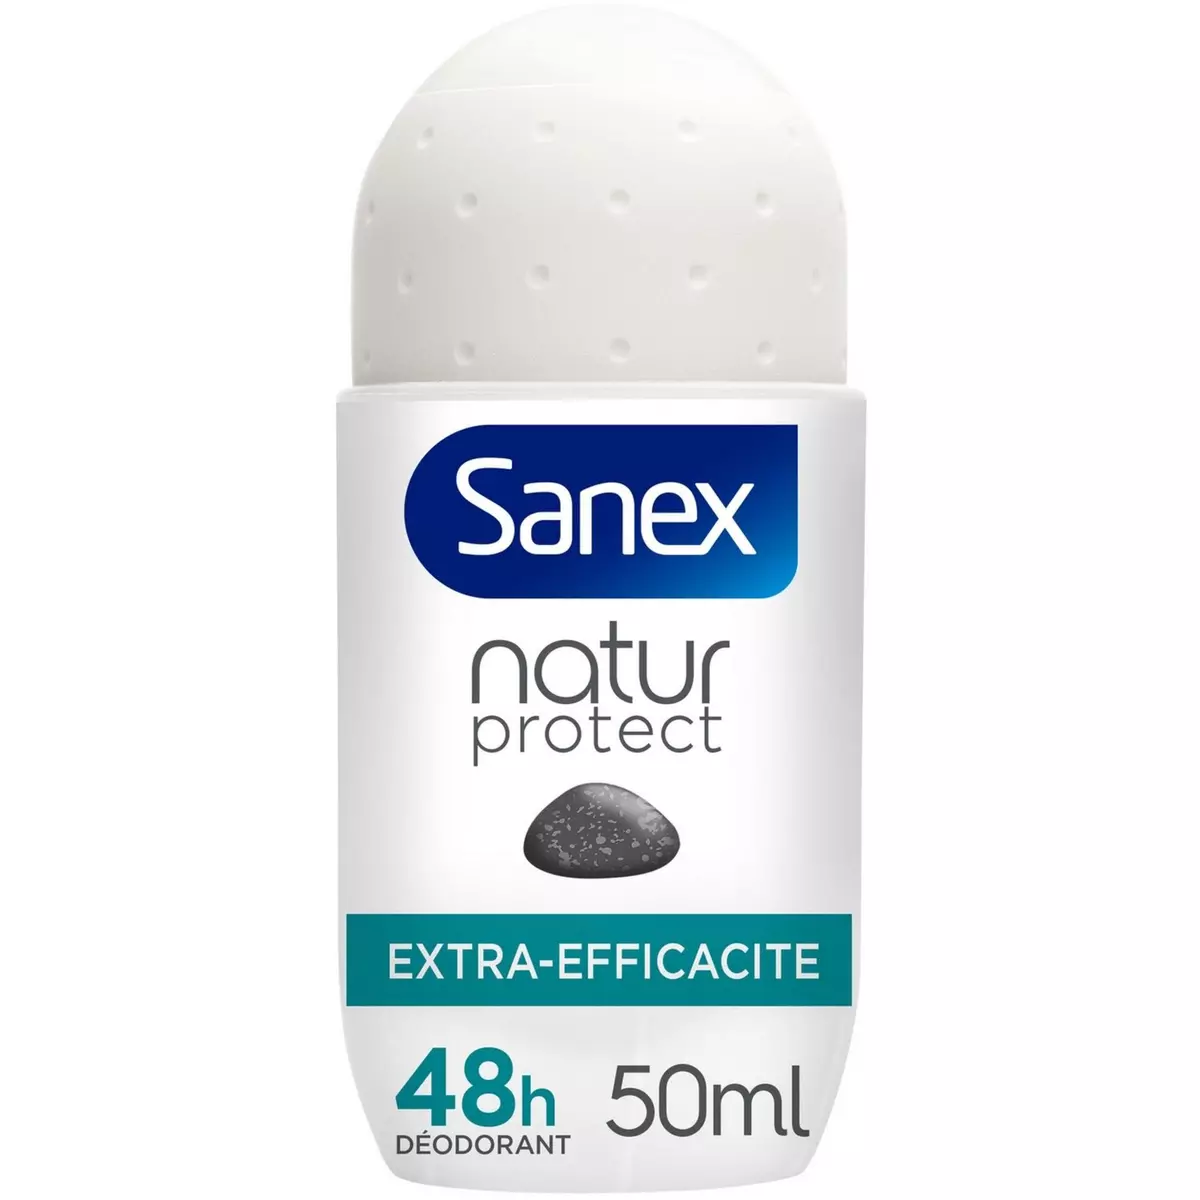 SANEX Natur protect Déodorant bille femme 48h extra-efficacité à la pierre d'alun 50ml